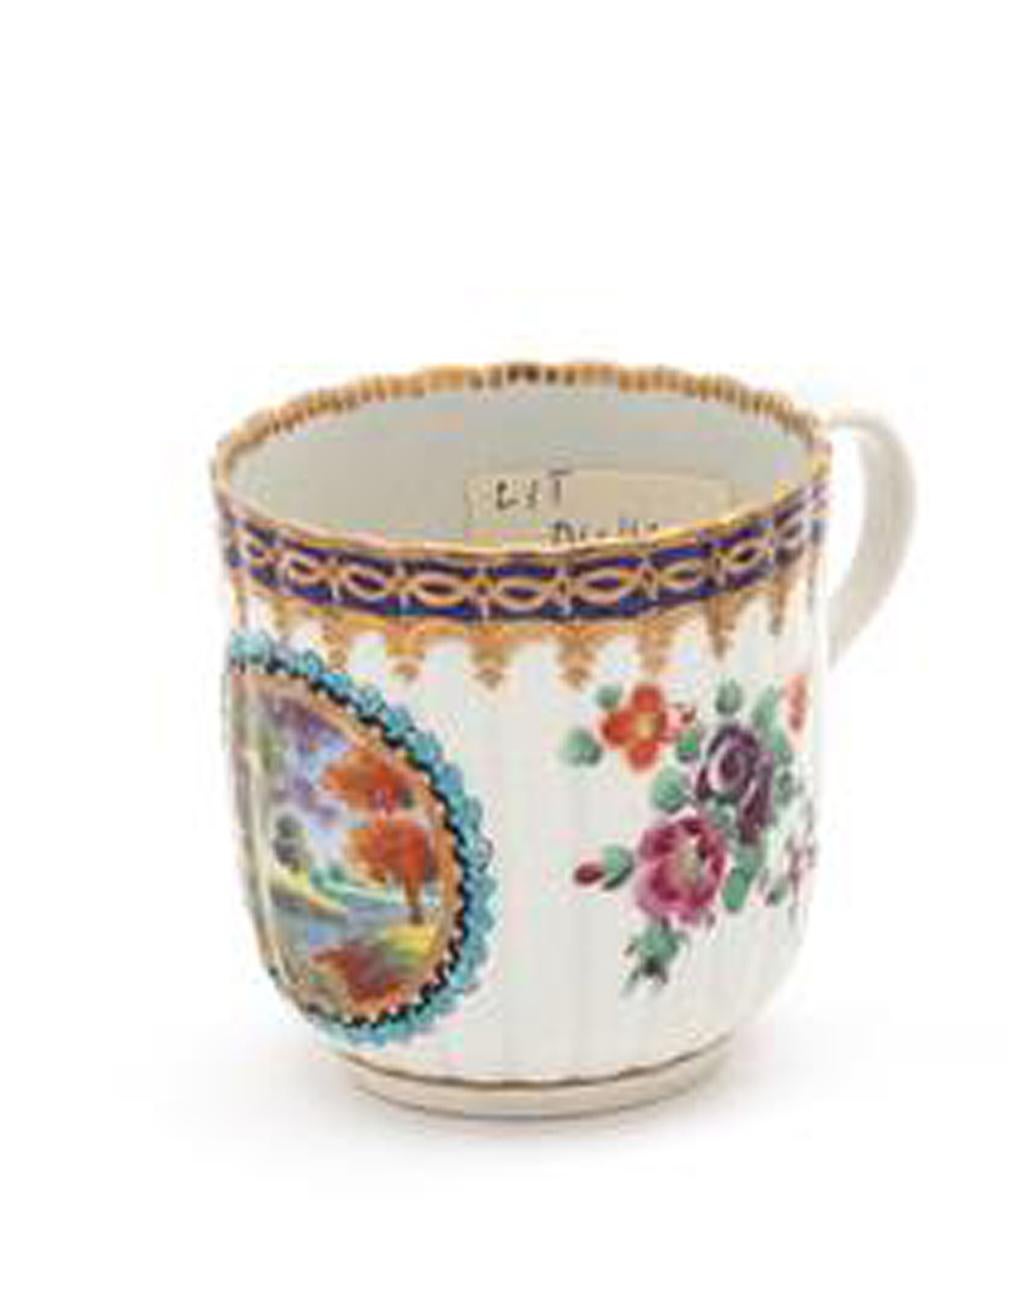 Erste Periode Worcester Porzellan Kaffeekanne und Untertasse,
ca. 1772-1775

Die geriffelte Worcester-Porzellan-Kaffeekanne und -Untertasse sind fein mit einer zentralen Reserve mit einer Landschaftsszene mit einem Blumen- und